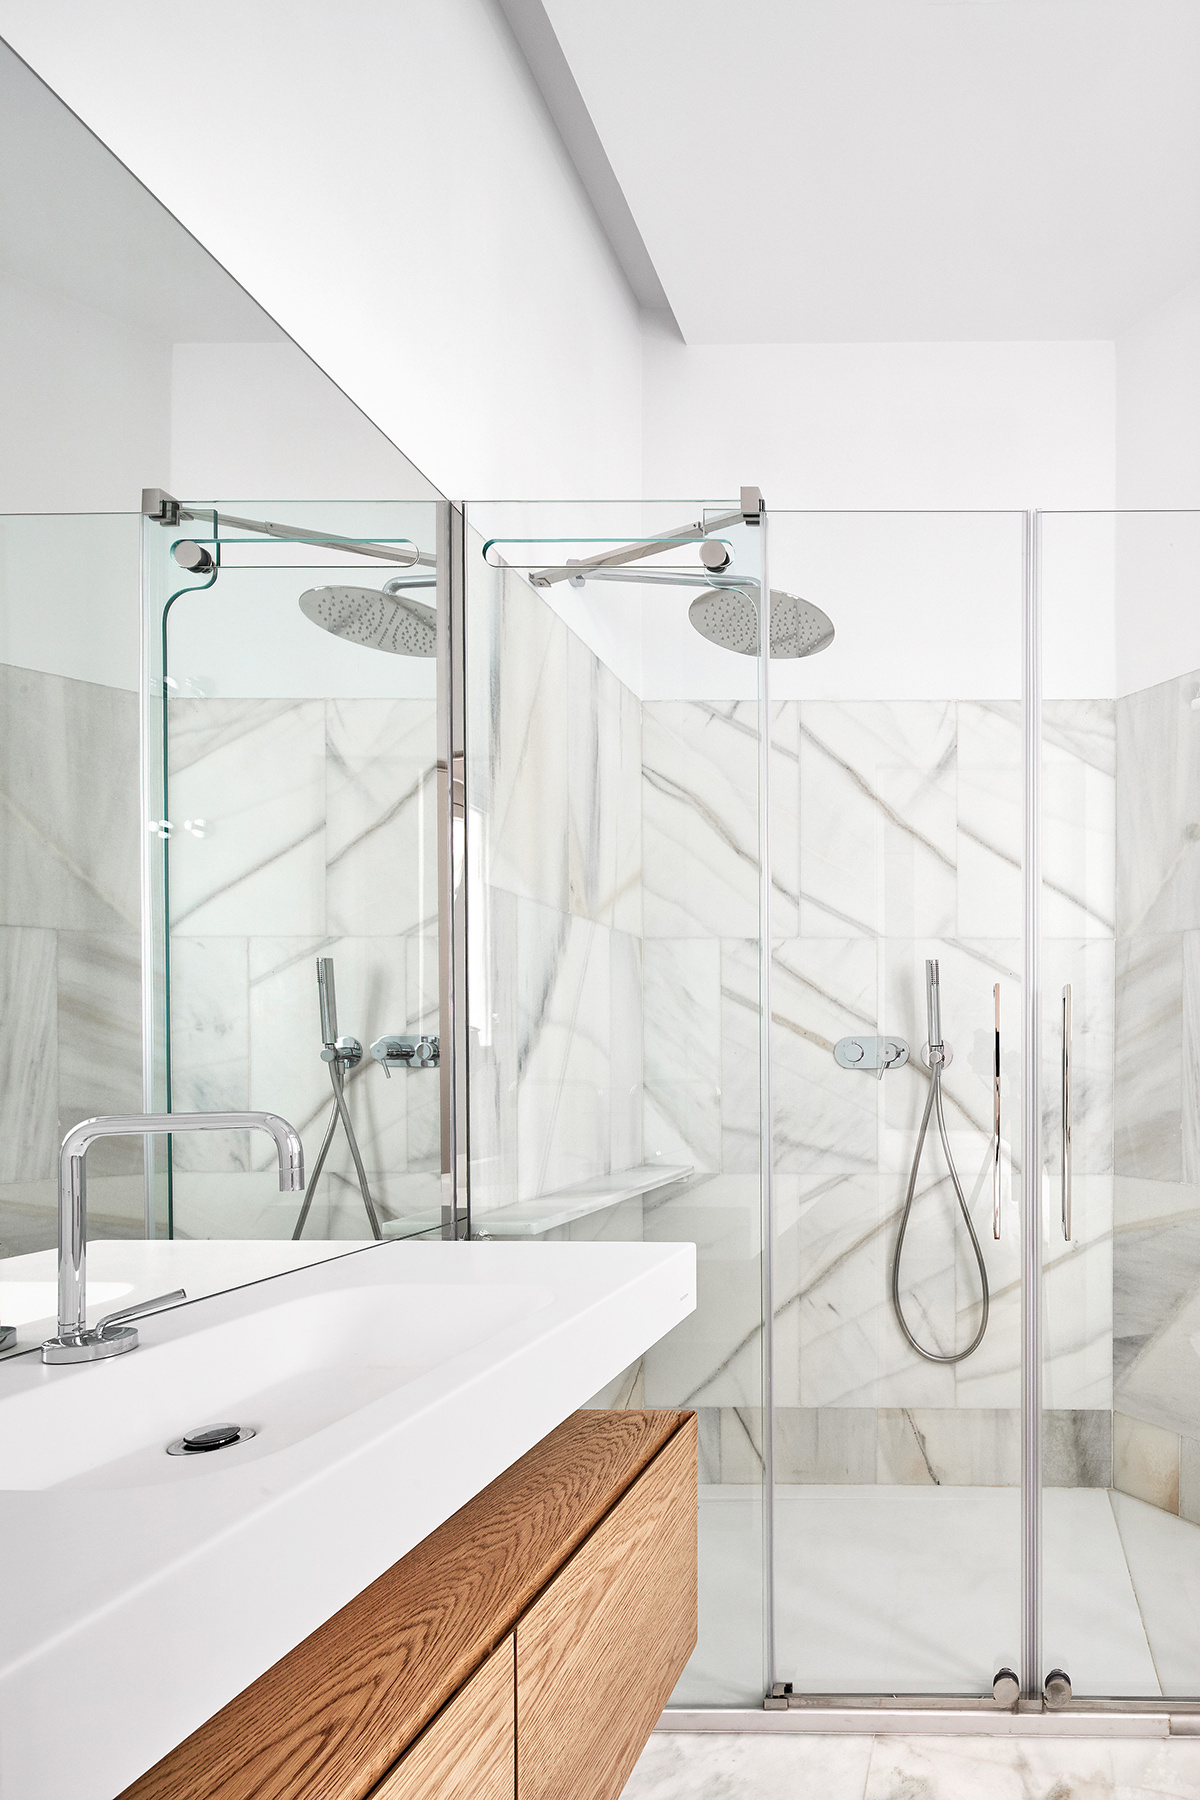 卫浴空间以干净敞亮为主，用玻璃进行干湿分离后，空间变得更加明朗。